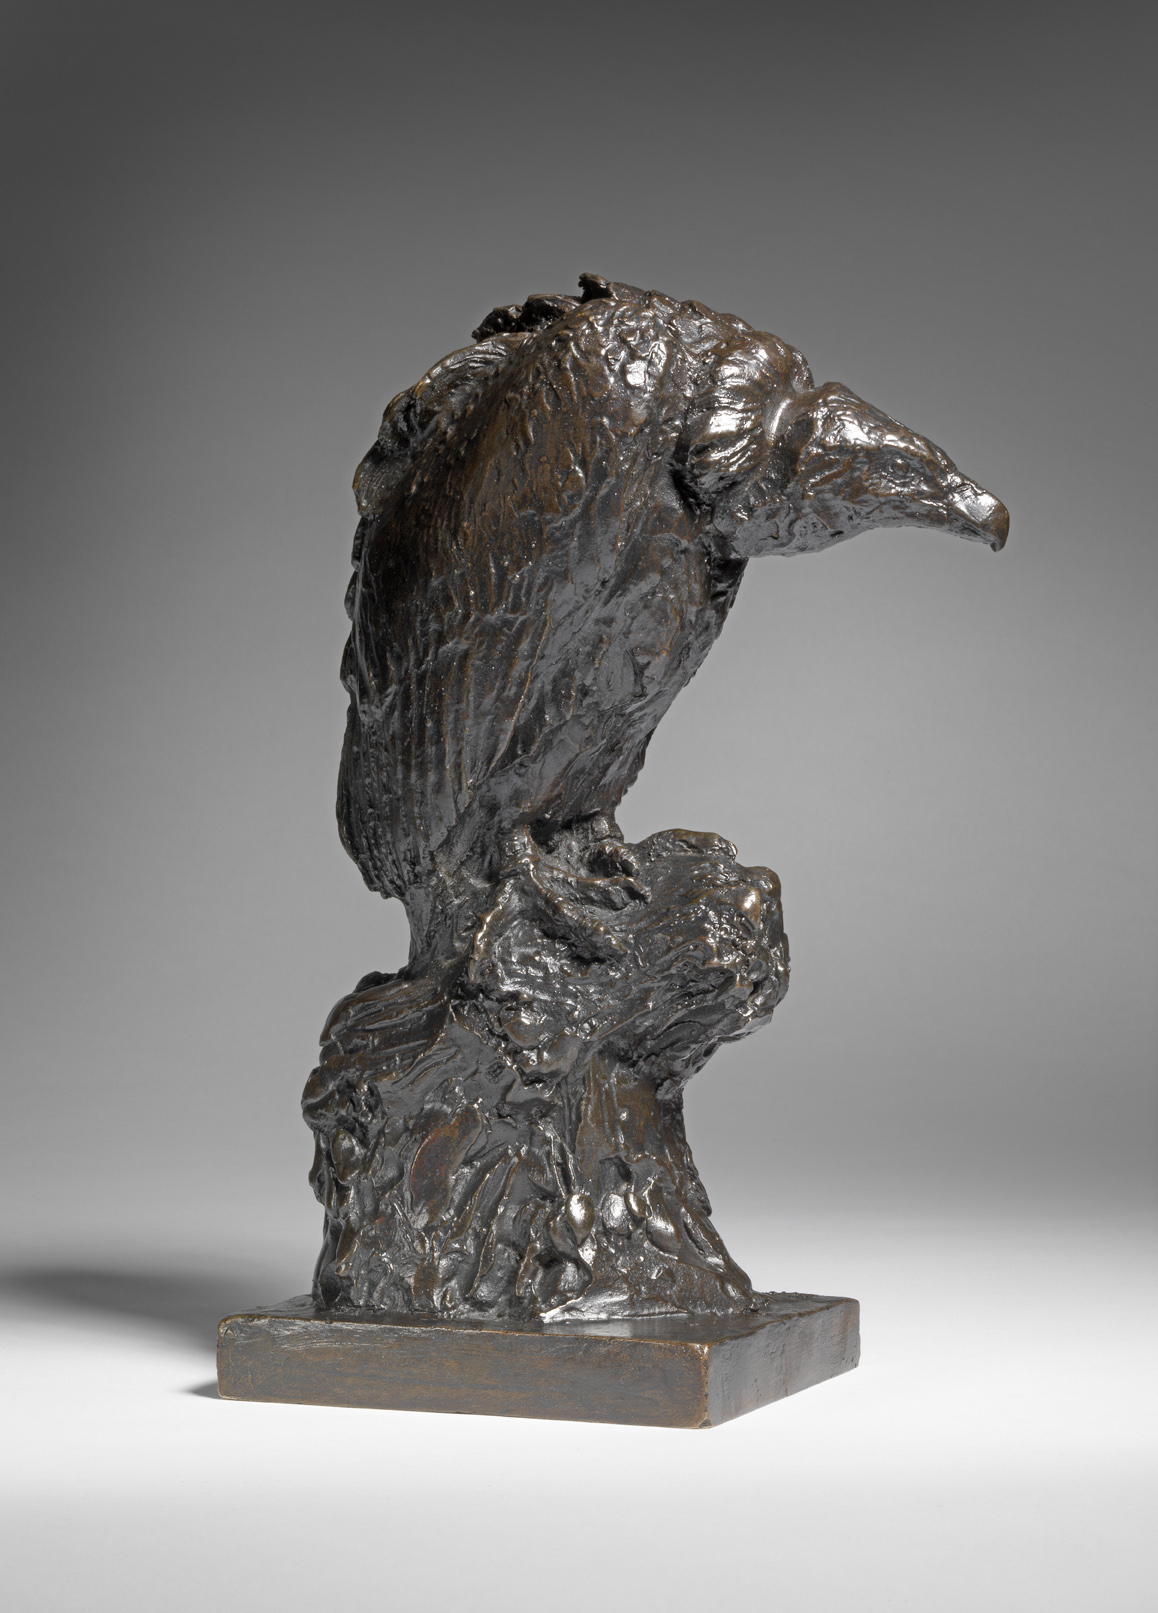 Vulture, c. 1925